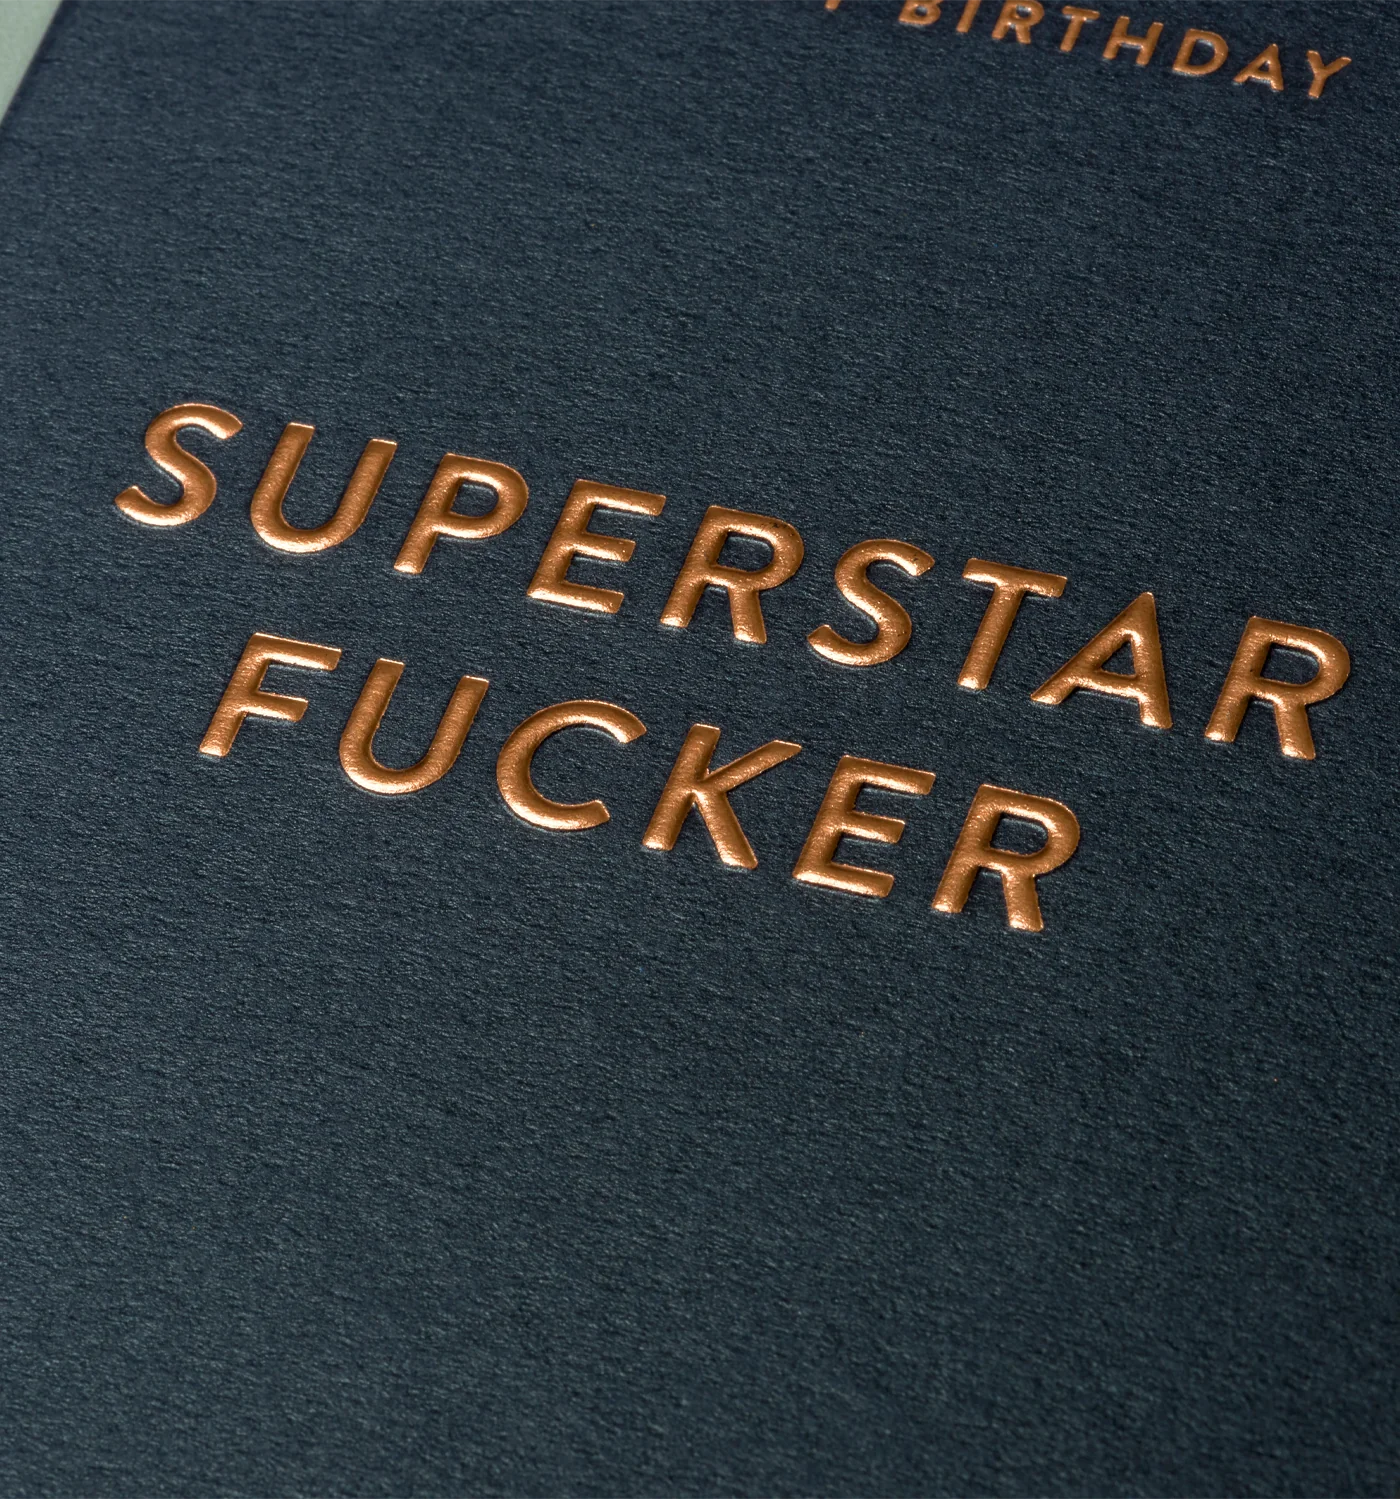 Superstar Fucker Birthday Card